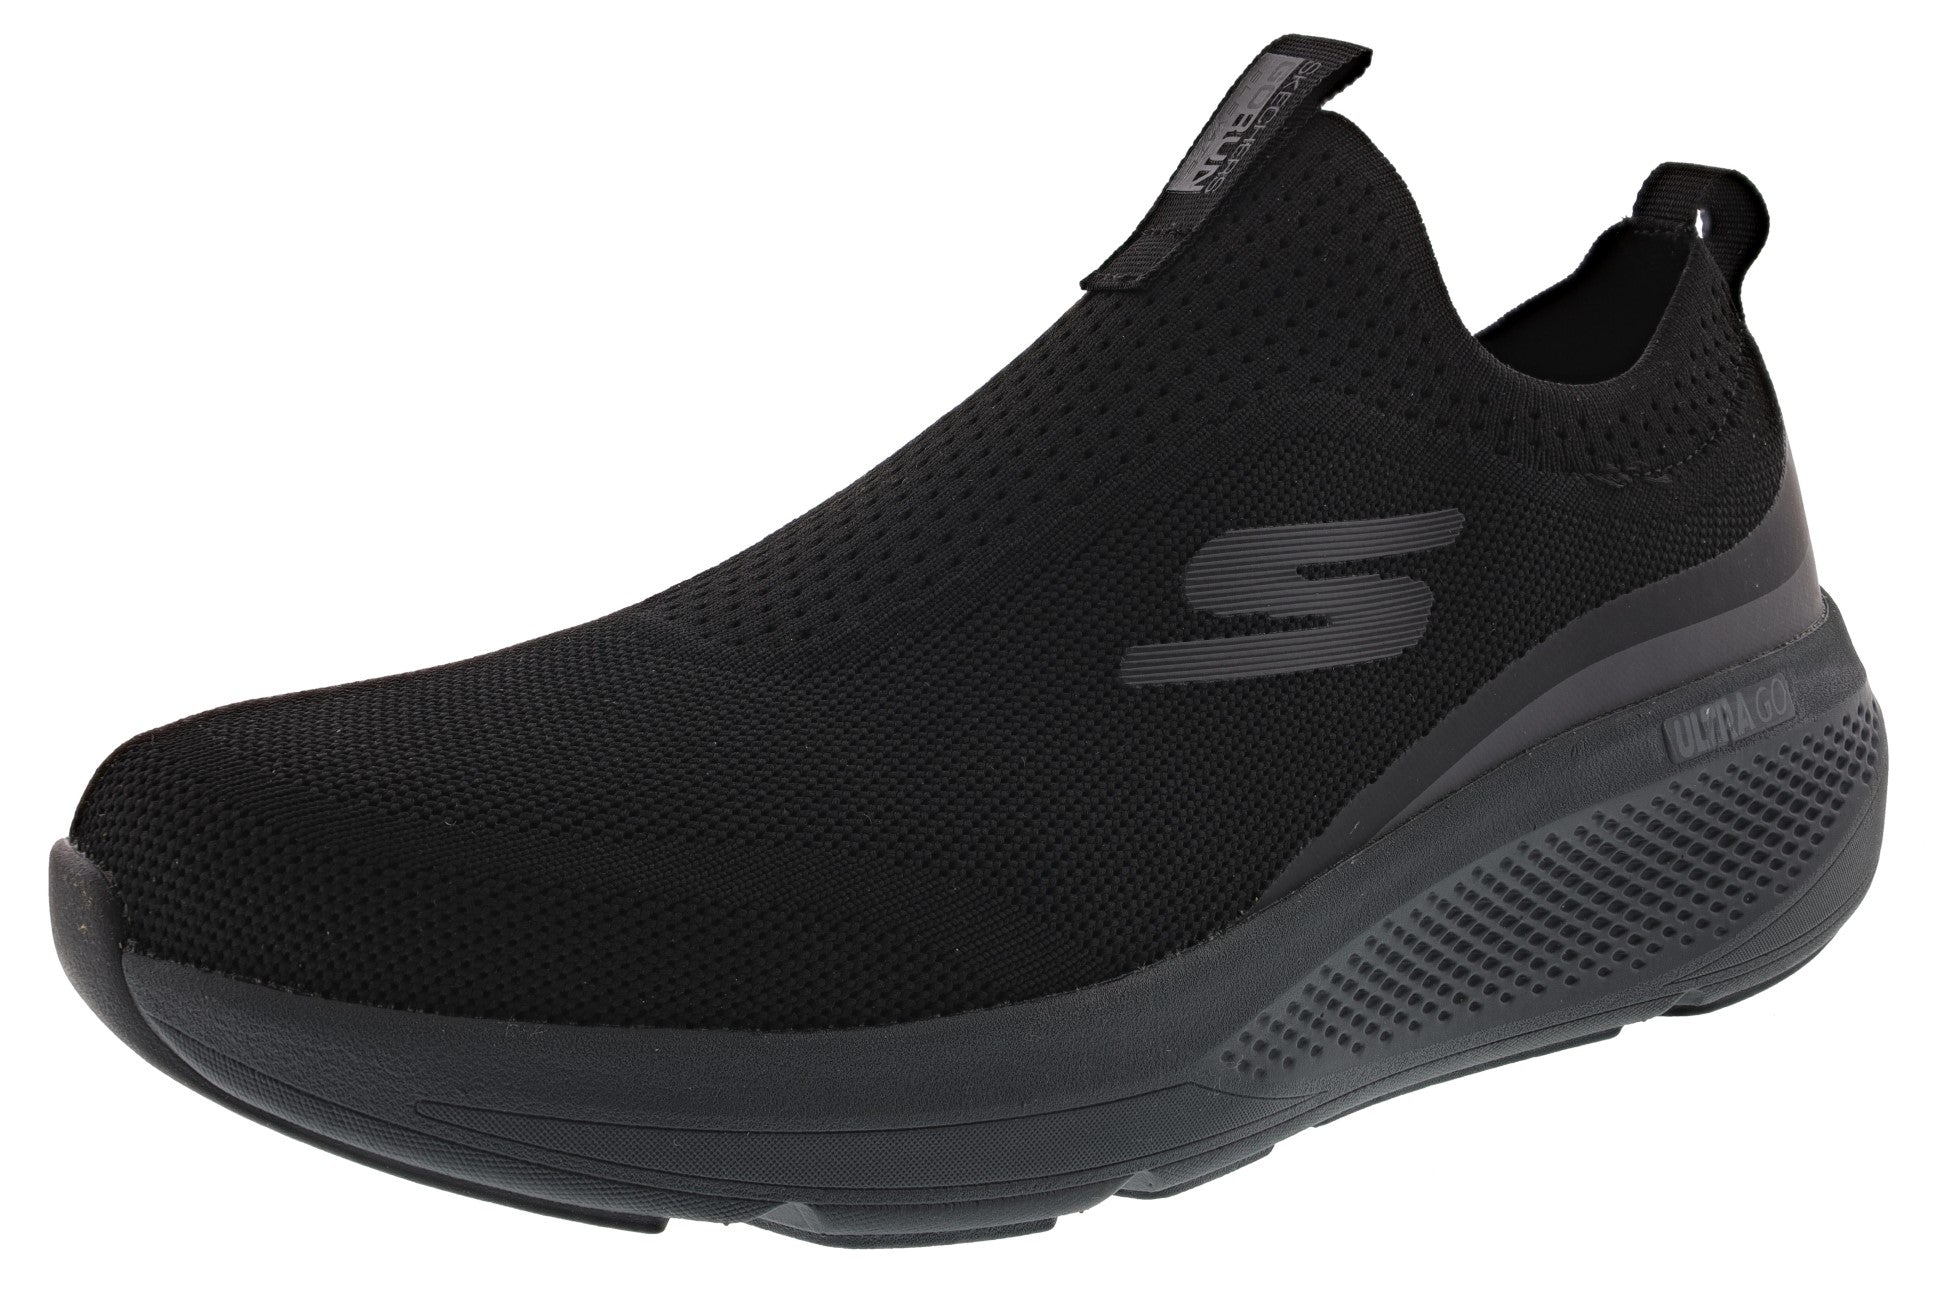 Melancolía emparedado encender un fuego Skechers Go Run Elevate Upraise Slip On Athletic Running Shoes-Men|ShoeCity  – Shoe City